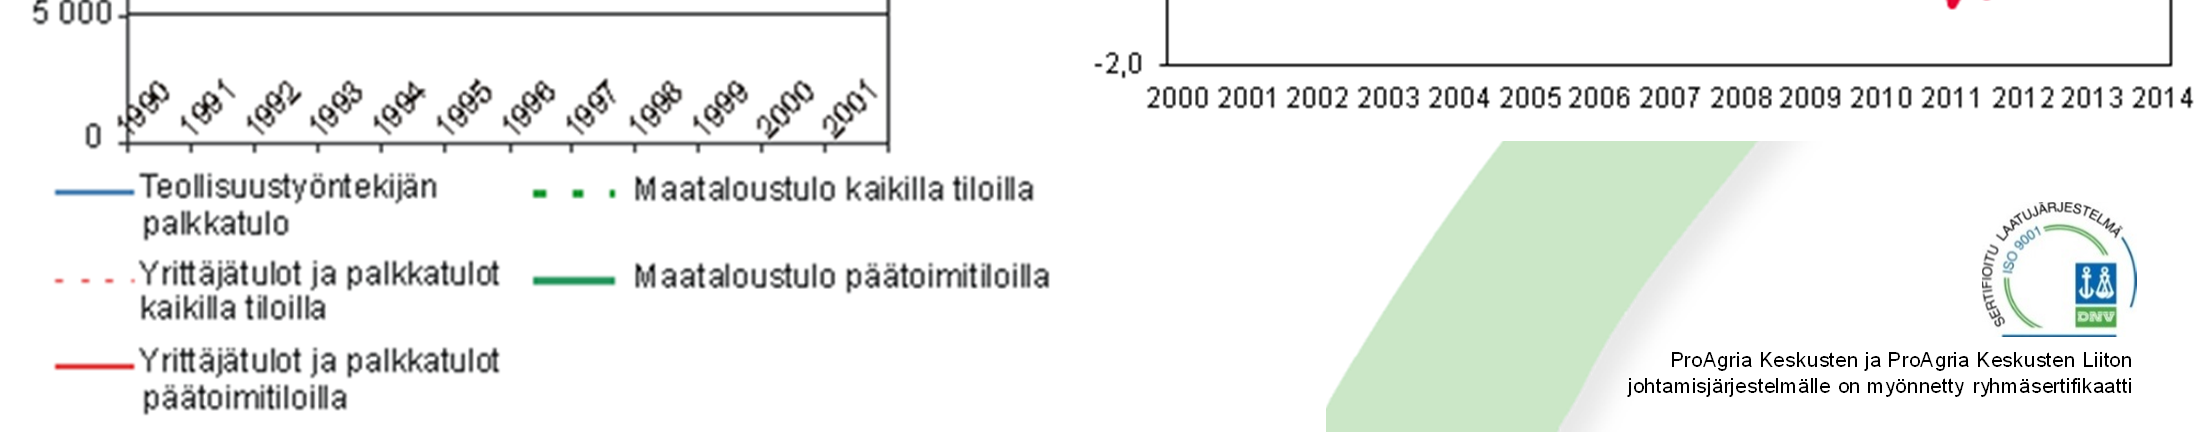 Ruokatorppareita, onko heitä? Tilastokeskus ansiotasoindeksi 1/2014 Puurunen Maija, Seppälä Risto A. ja Hirvi Tero 2004.